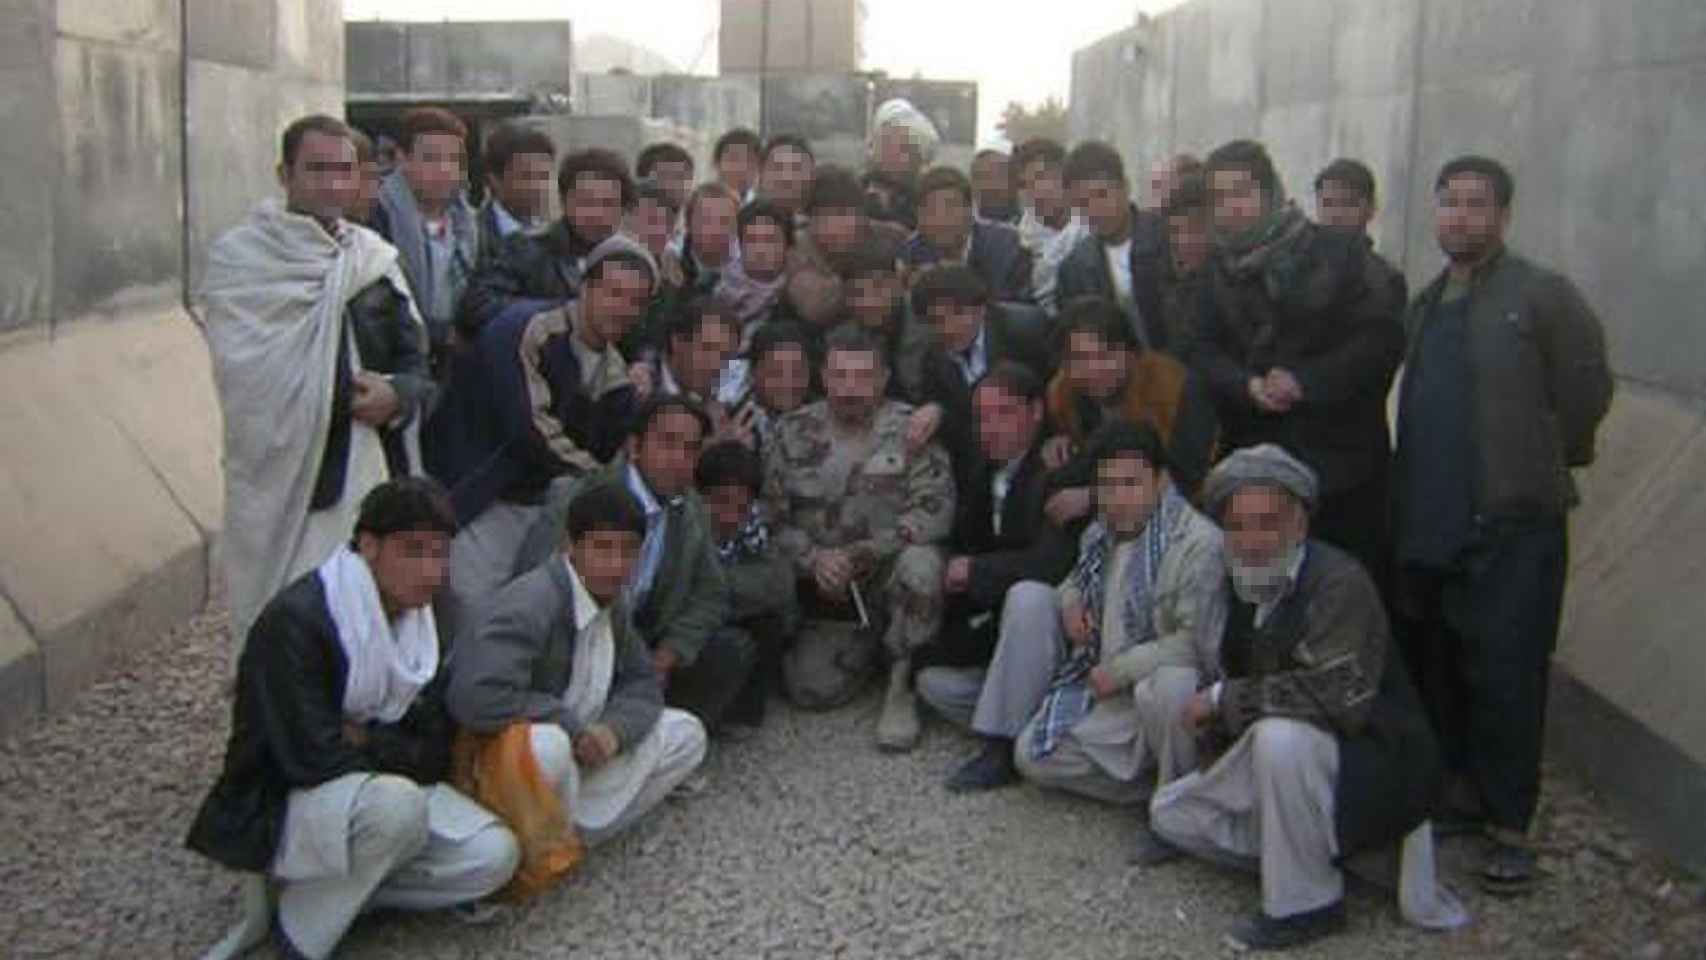 Fotografía cedida por Hasán en la que aparece un soldado español junto a varios colaboradores afganos.